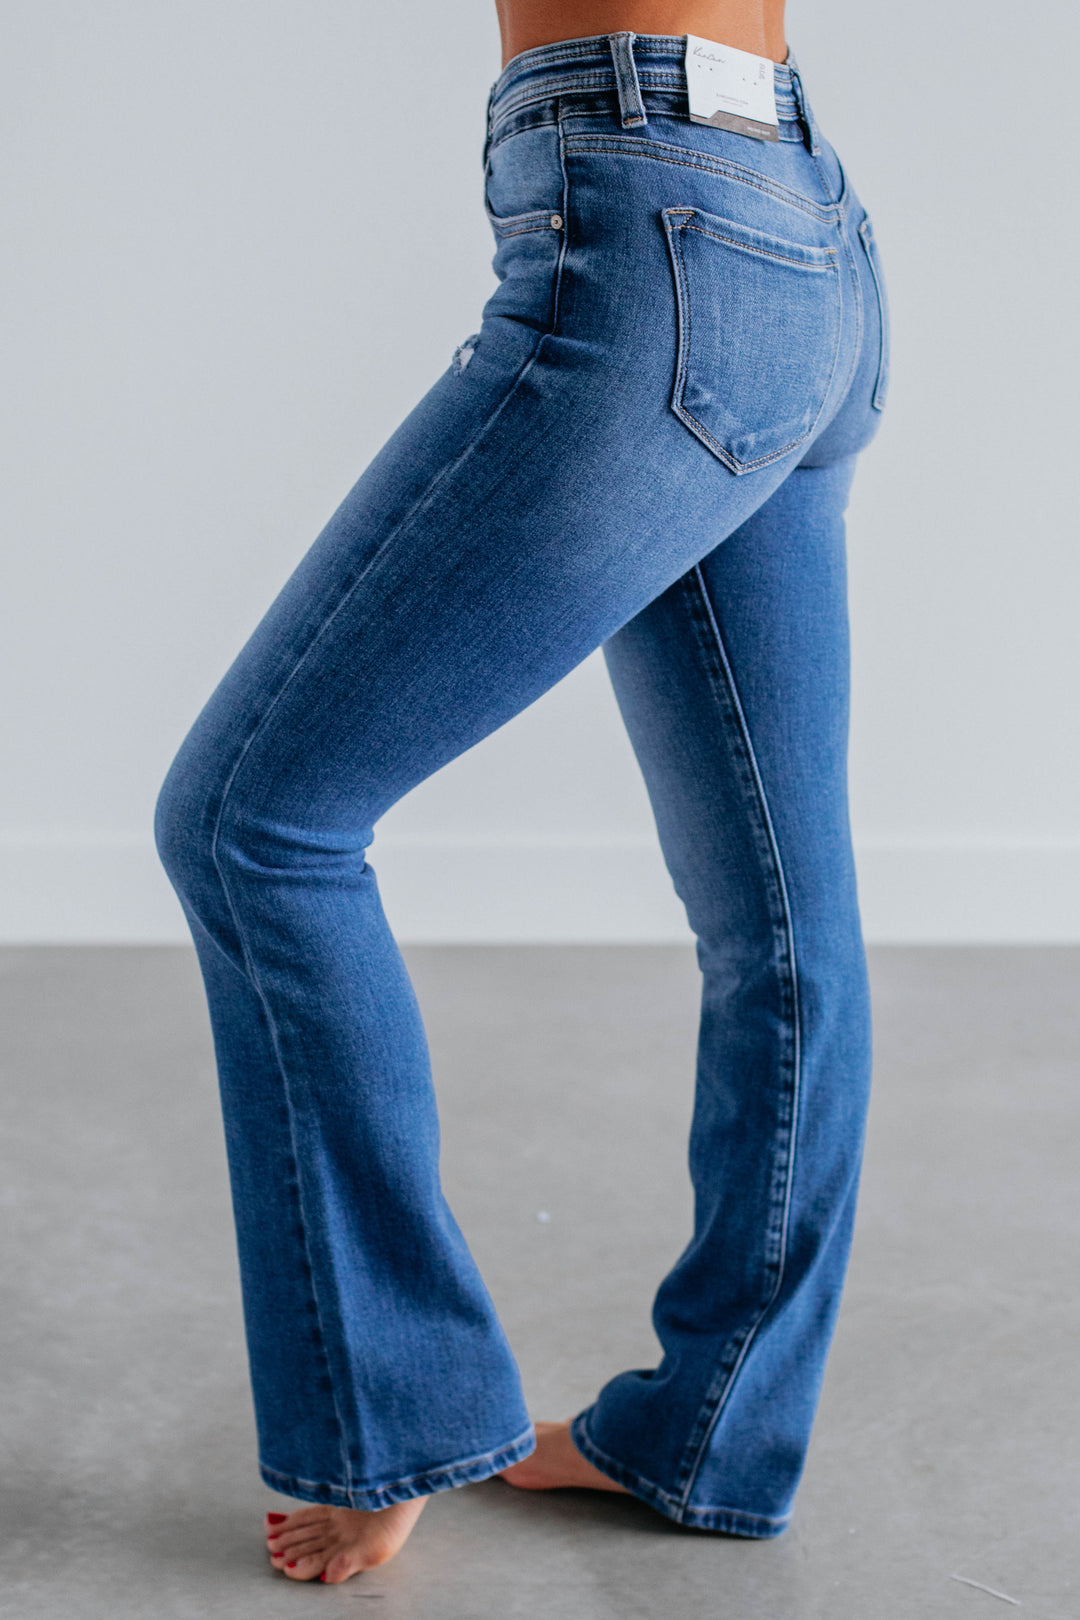 Milo KanCan Jeans